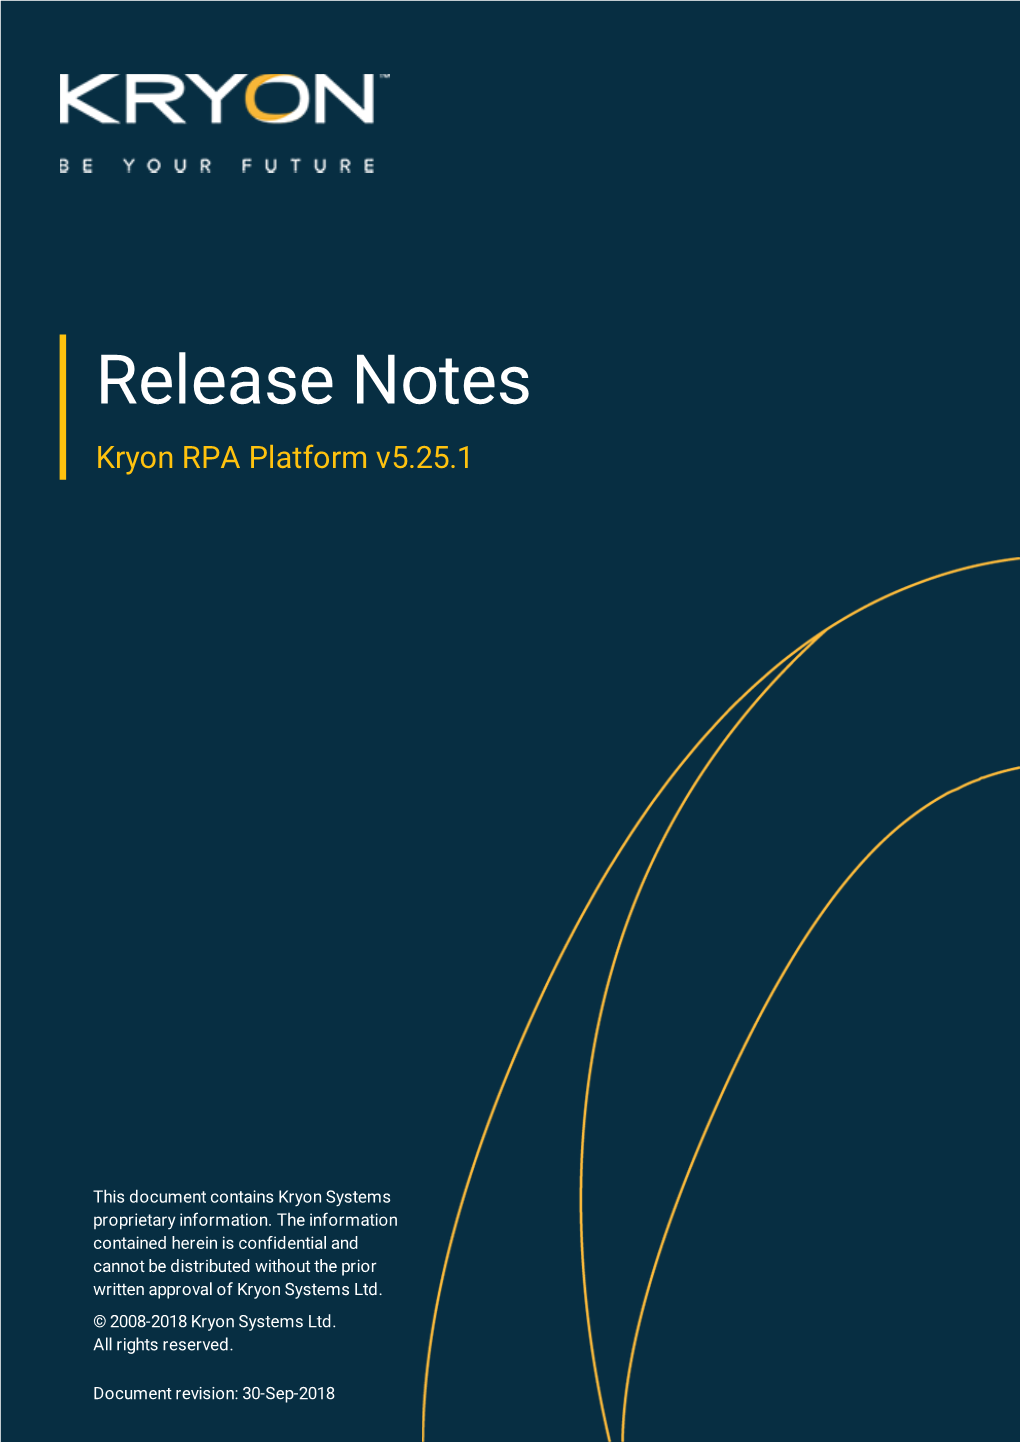 Release Notes Kryon RPA Platform V5.25.1